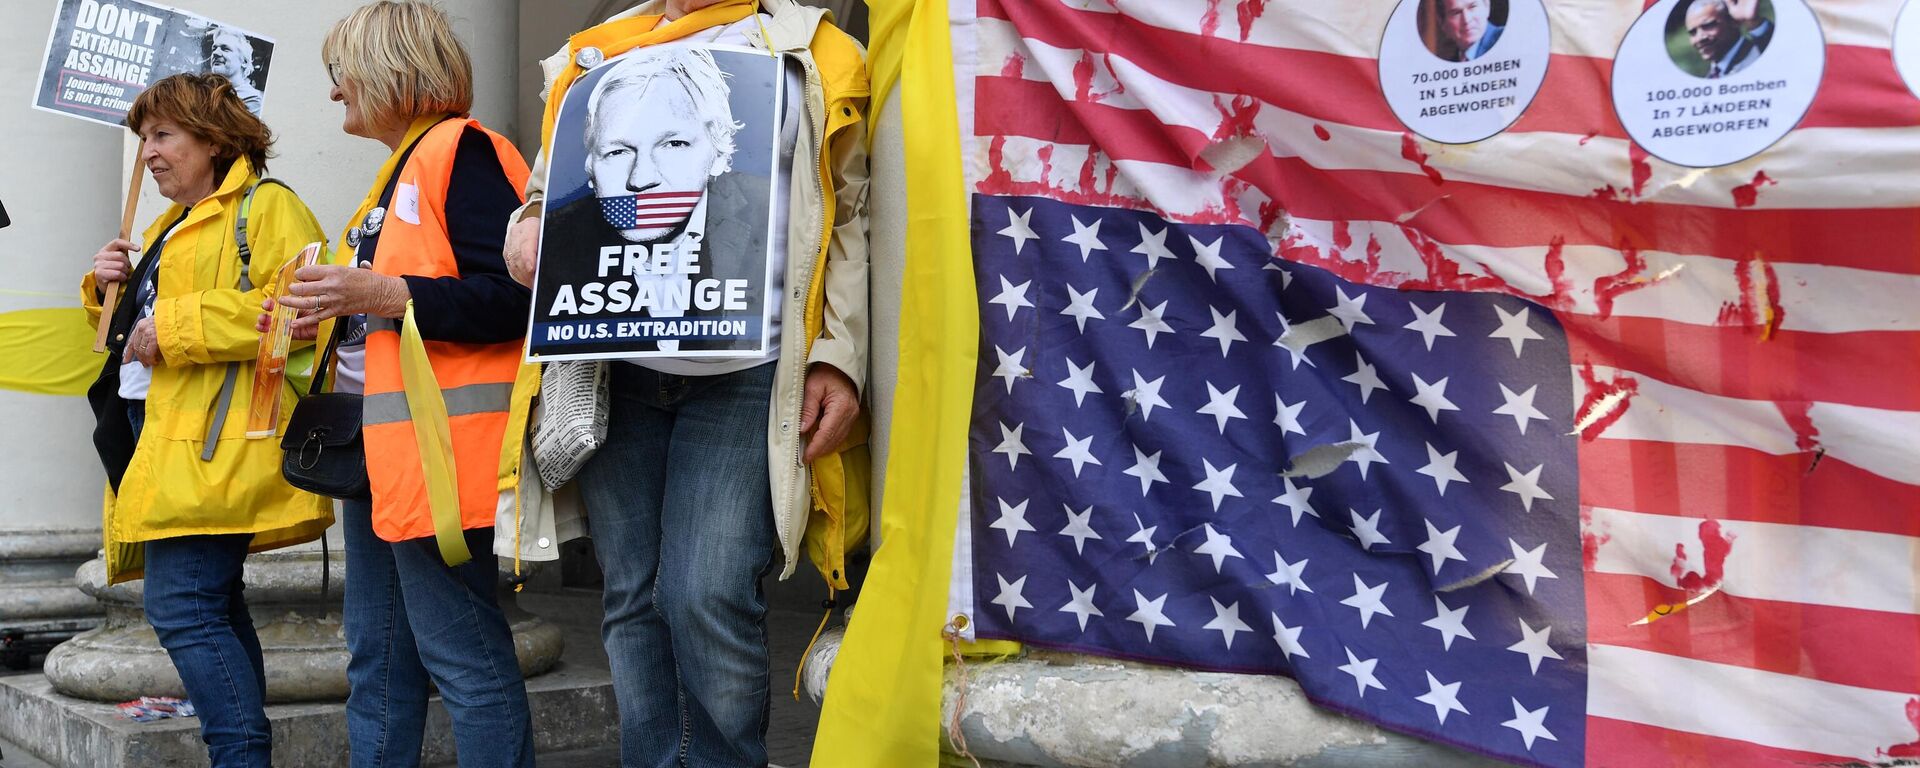 Tutuklu gazeteci Julian Assange'a özgürlük ve ABD'ye iadesine karşı eylem - Sputnik Türkiye, 1920, 04.07.2022